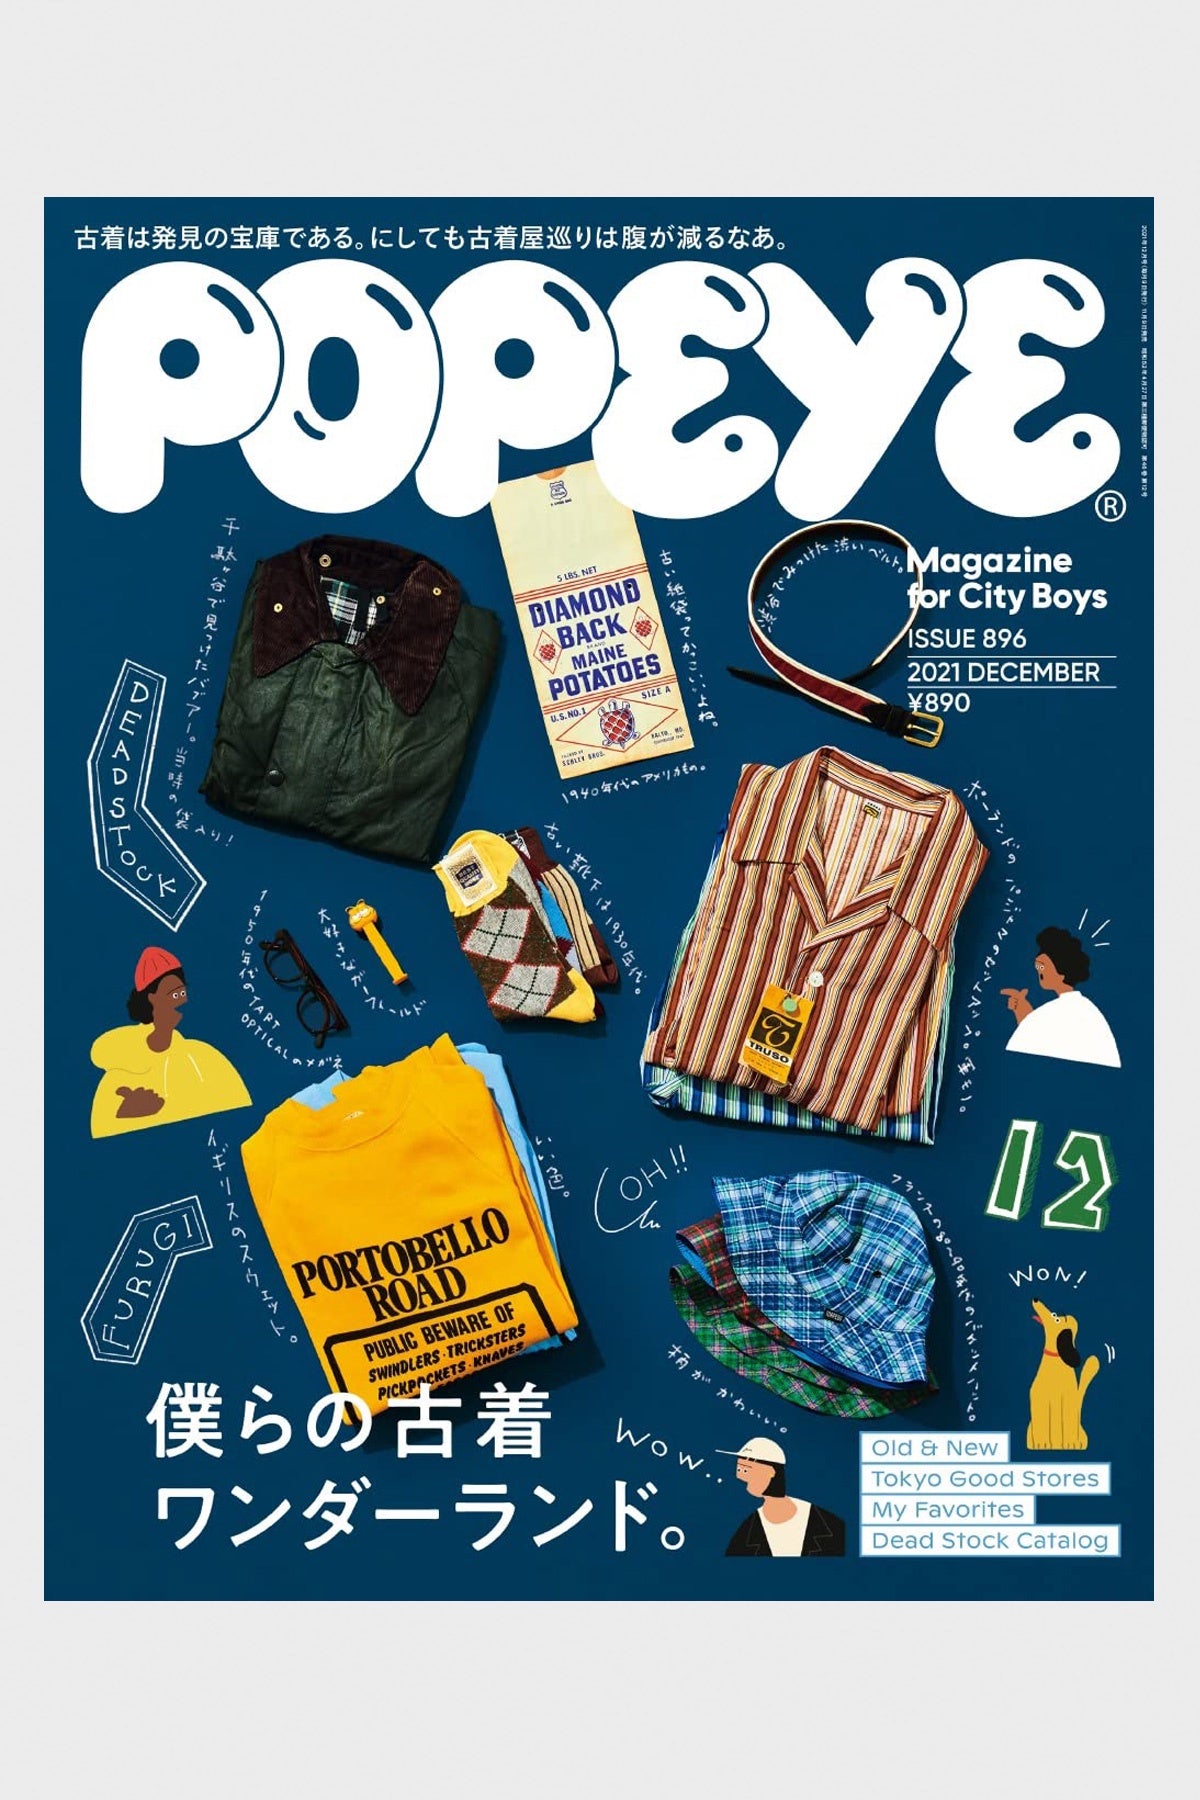 Popeye Magazine - #896